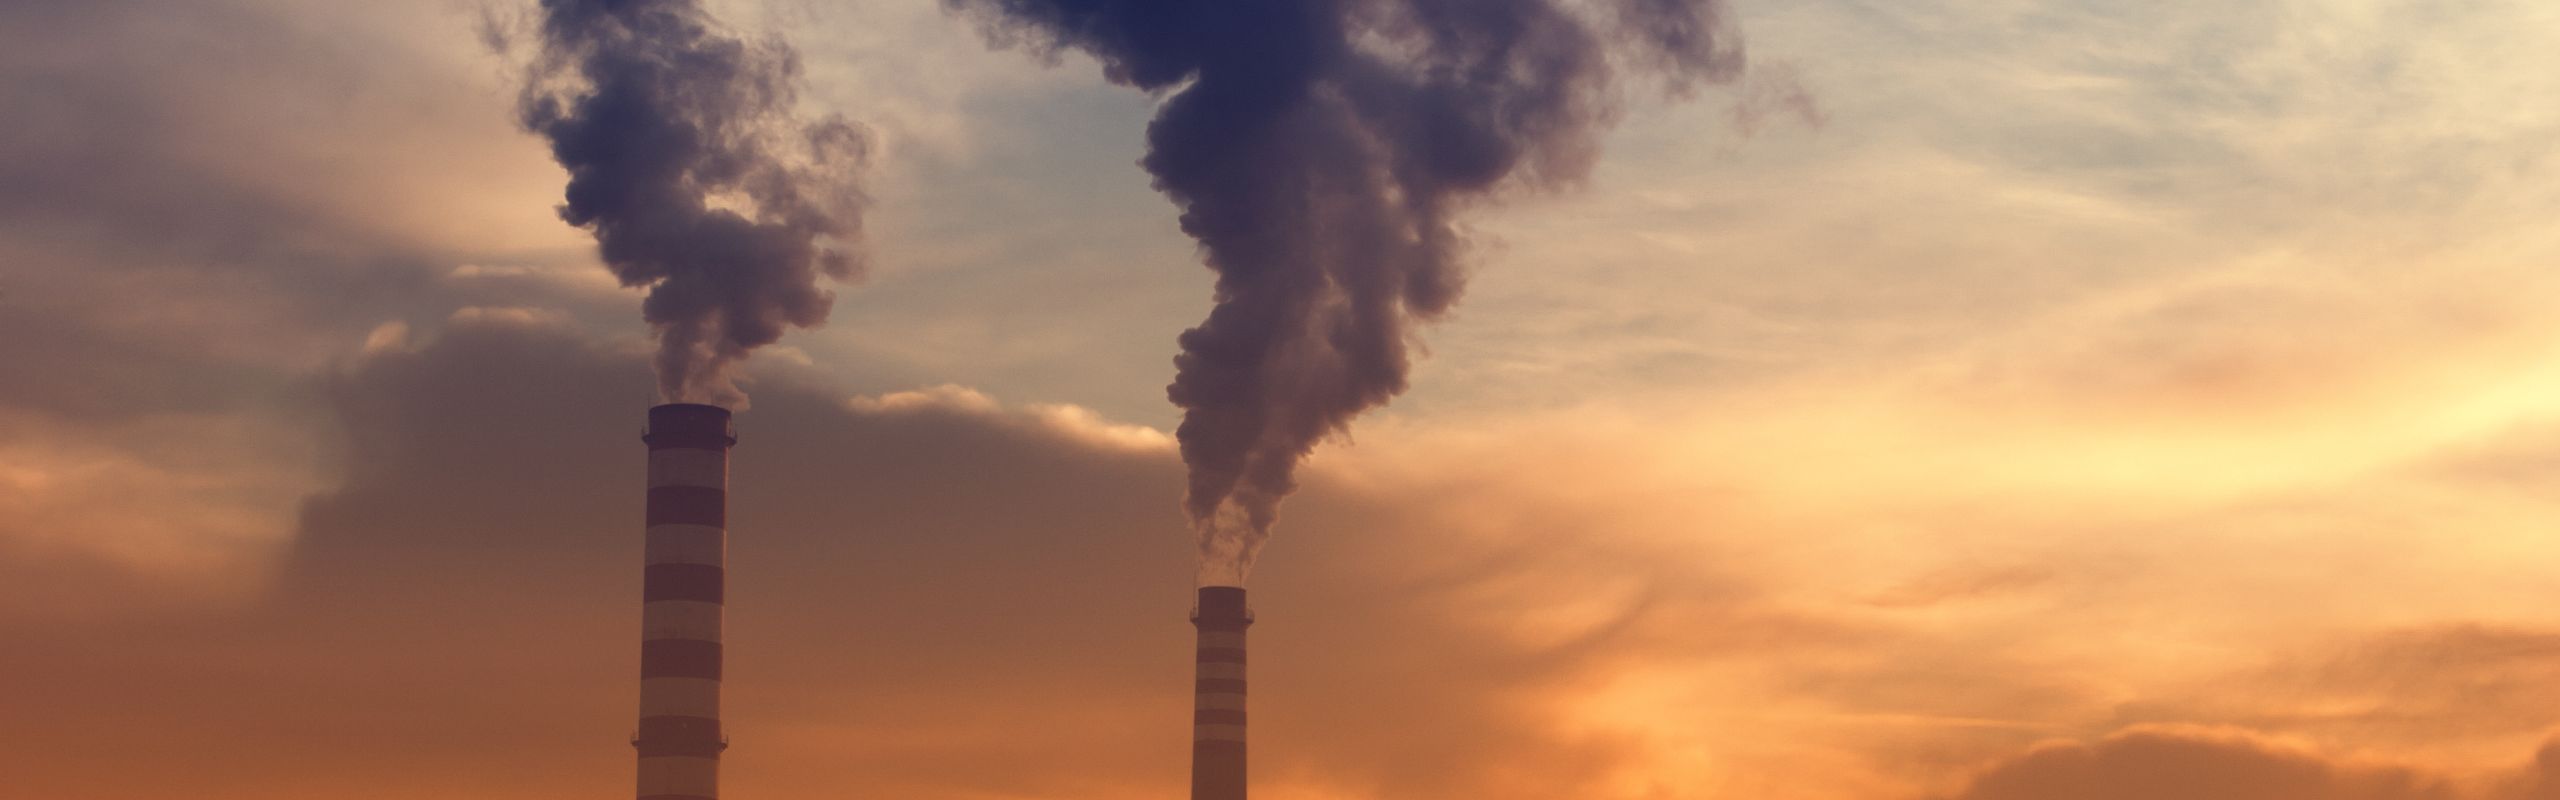 Vilka är koldioxidutsläppen?